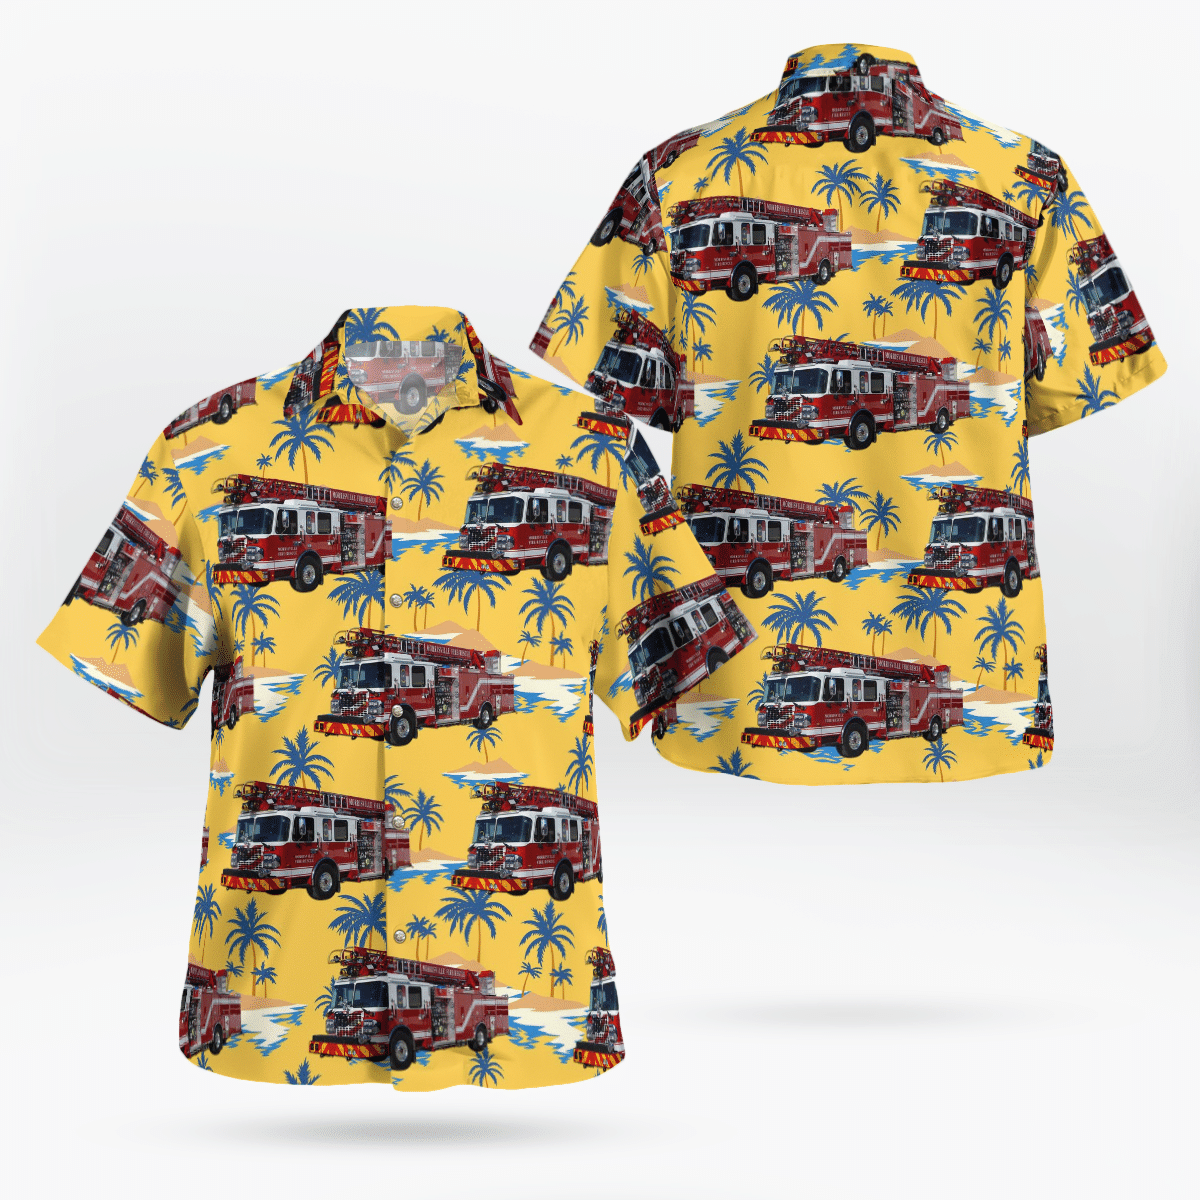 You won't regret buying these Aloha Shirt 90